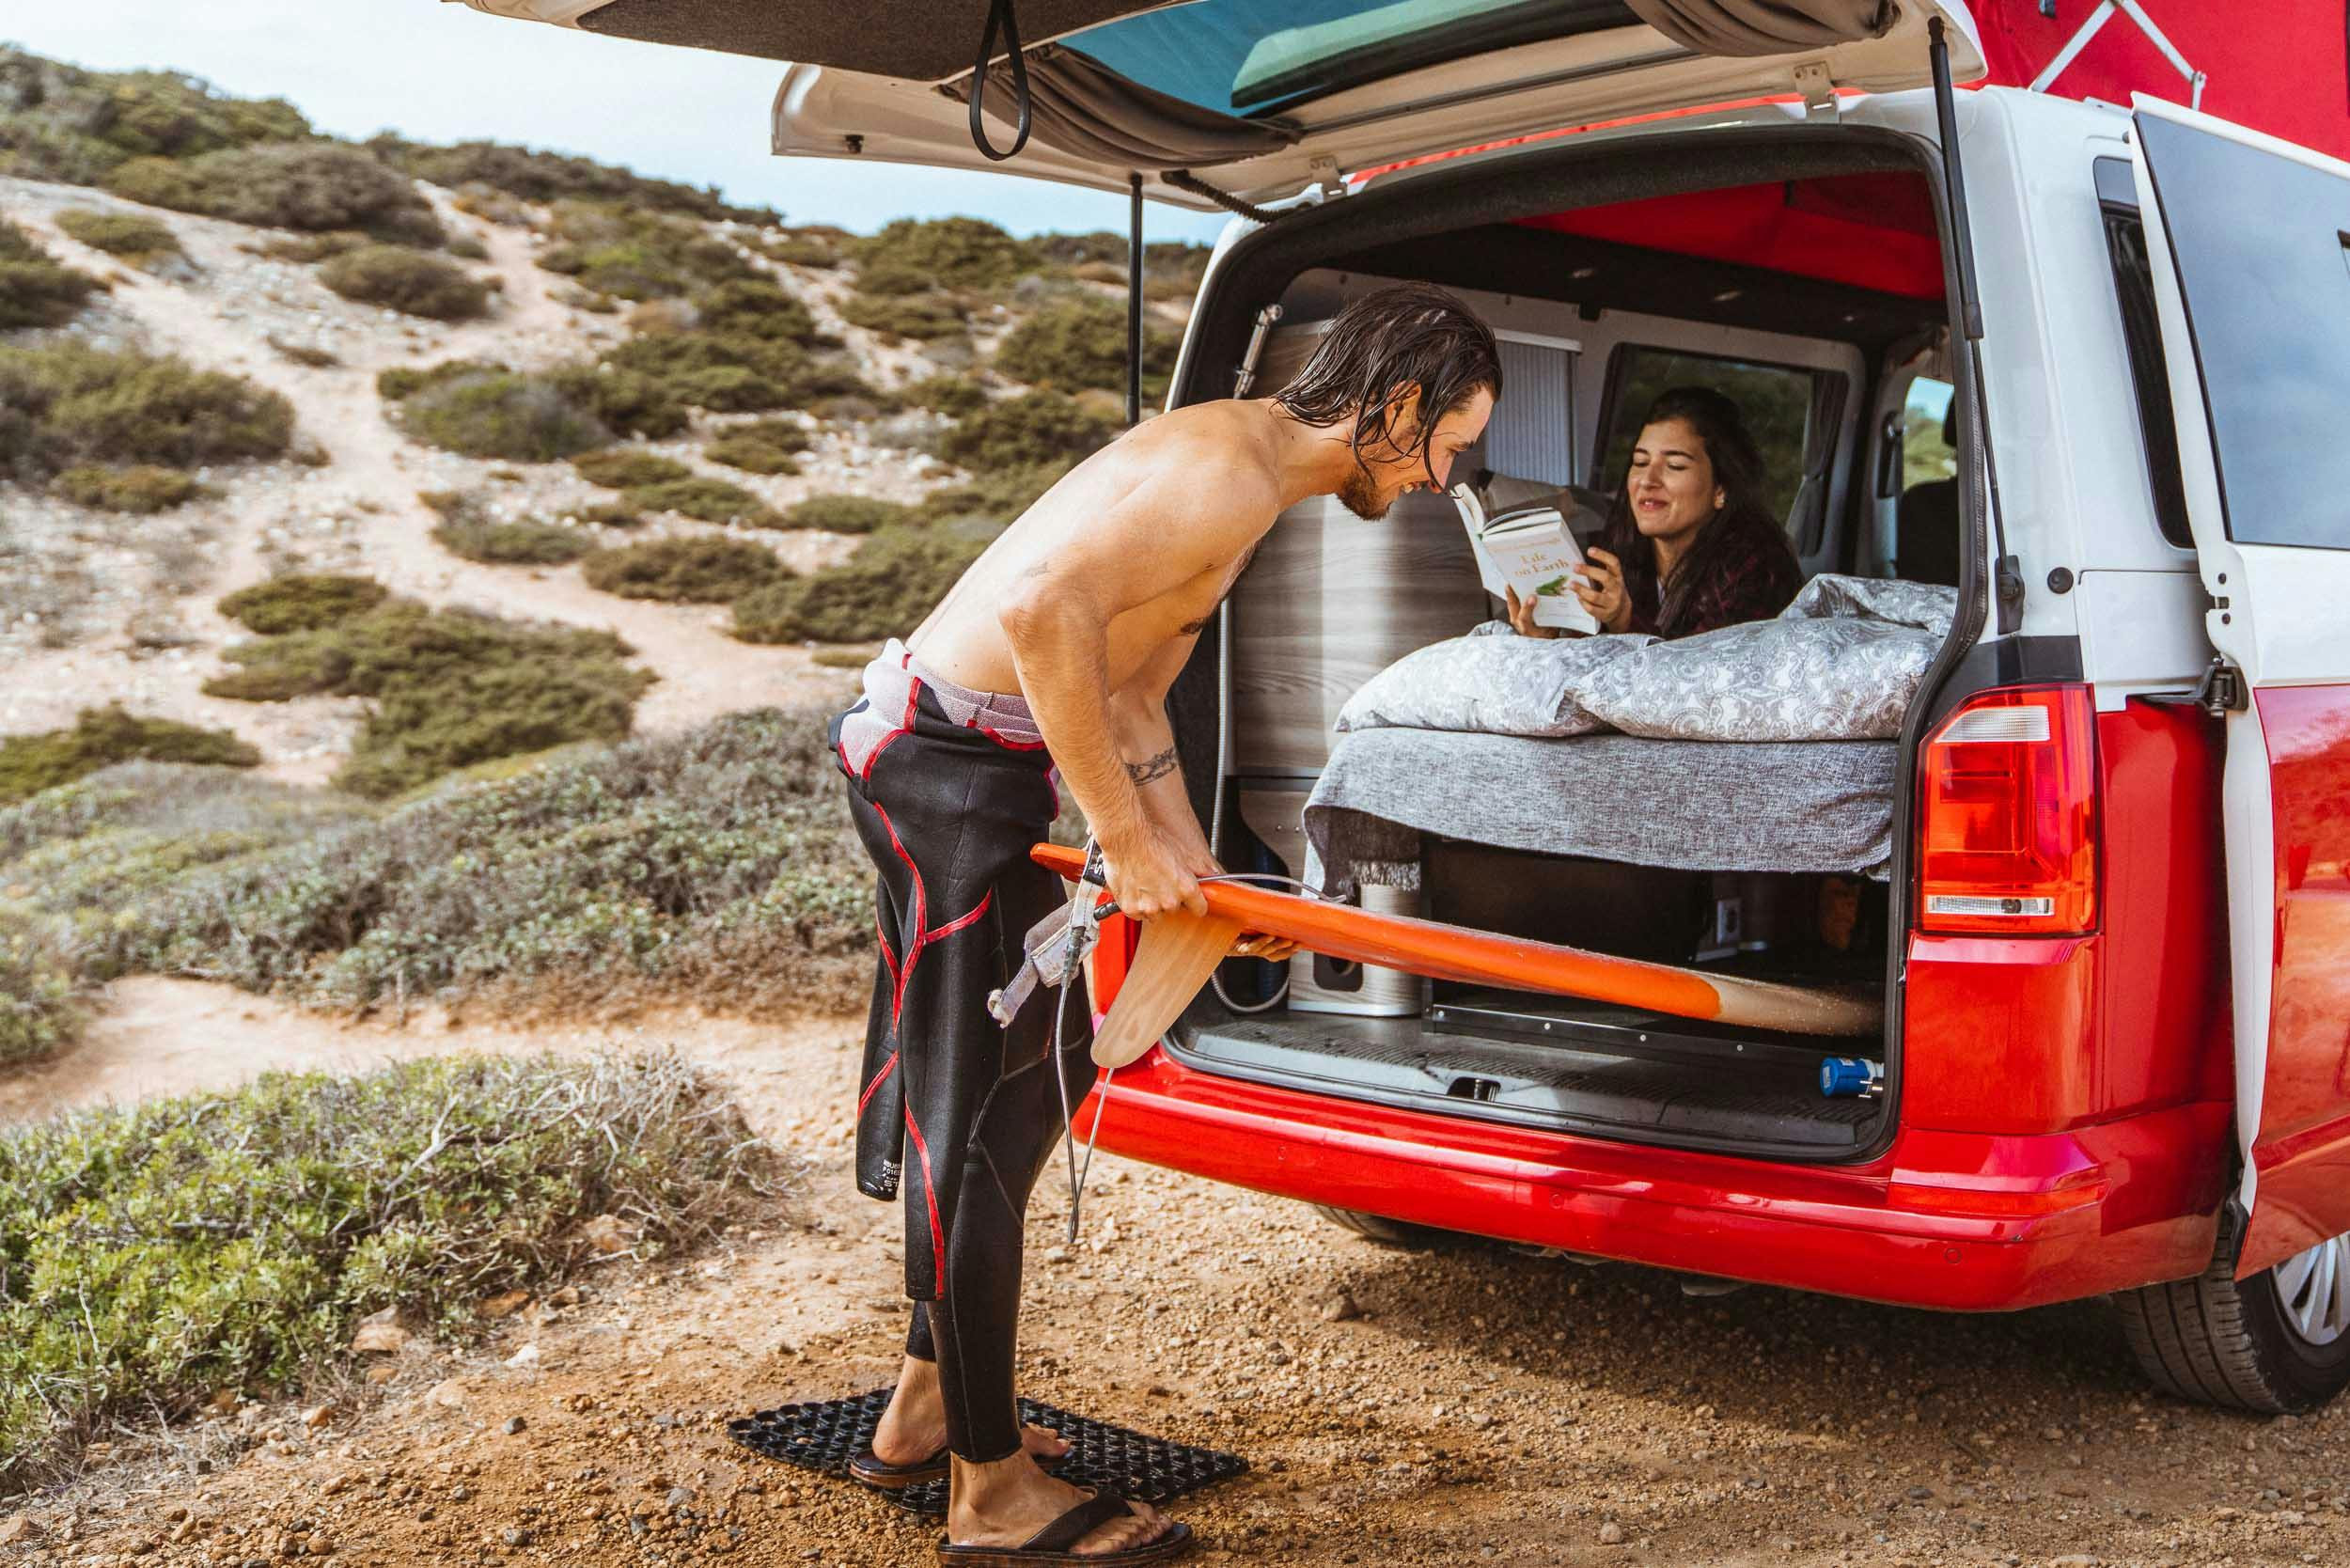 El conforto y espacio ideal para viajar en pareja y de tabla de surf en mano